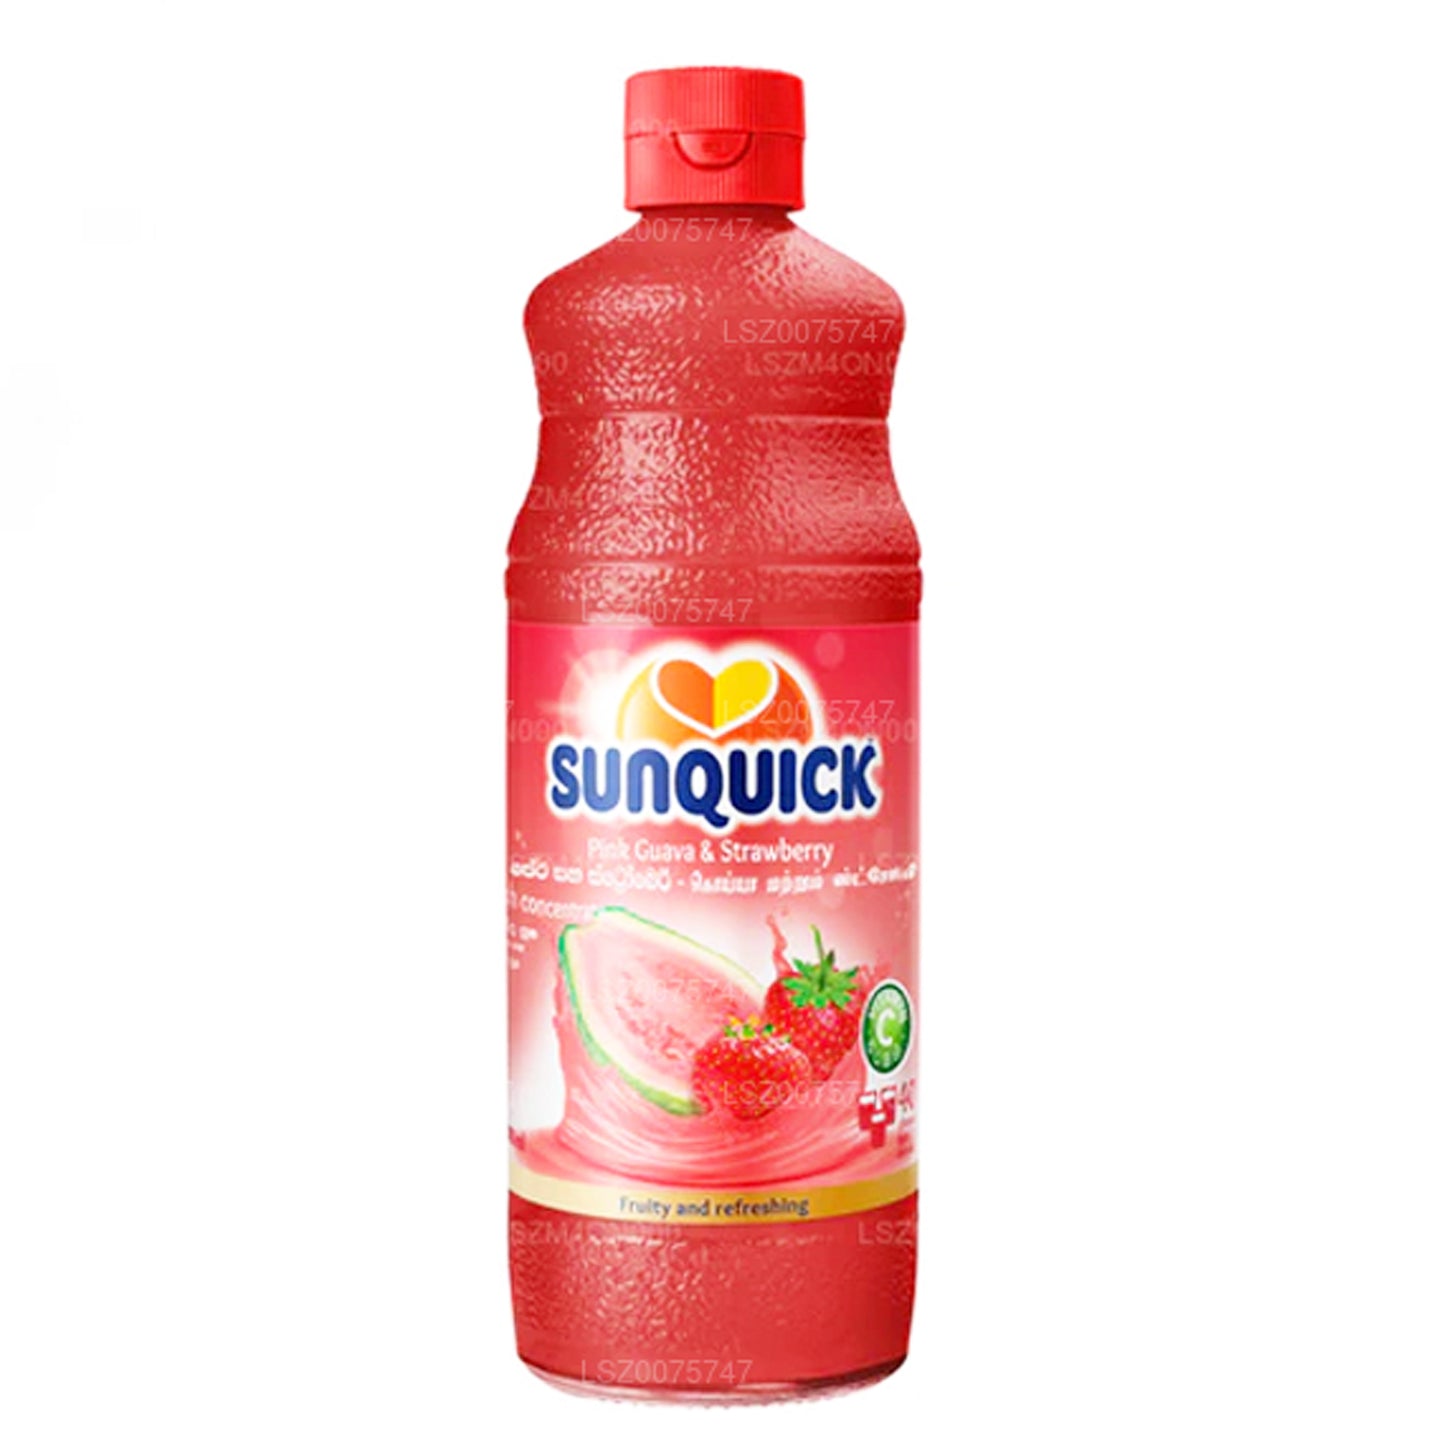 Sunquick Guawa i Strwberry (840ml)